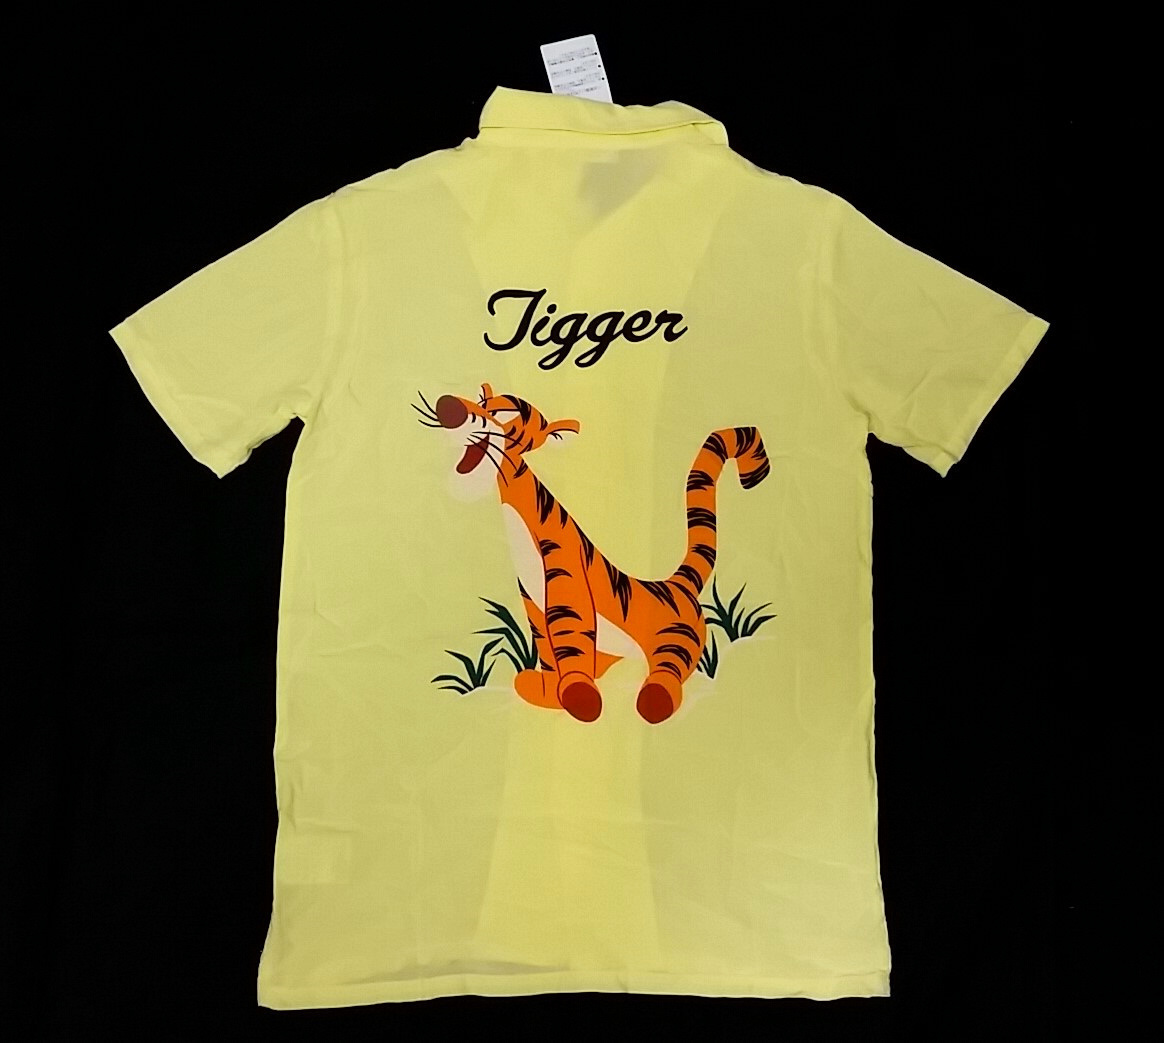 新品タグ付 Tigger レーヨン アロハシャツ Sサイズ ティガー ディズニー Disney 半袖シャツ 日本代购 买对网